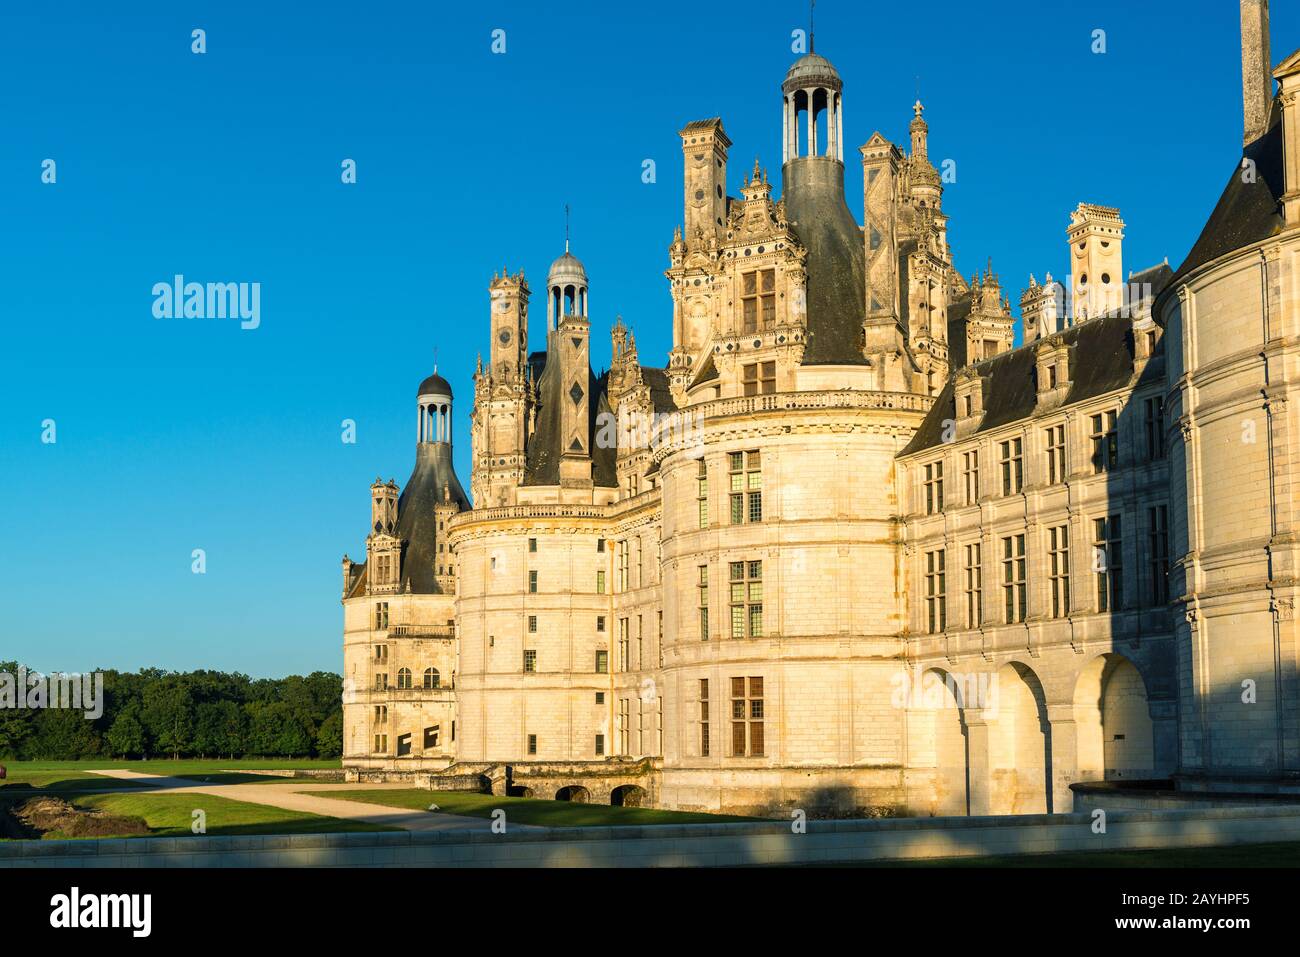 Le Château royal de Chambord, France. Ce château est situé dans la vallée de la Loire, construit au XVIe siècle et est l'un des plus reconnaissables c Banque D'Images